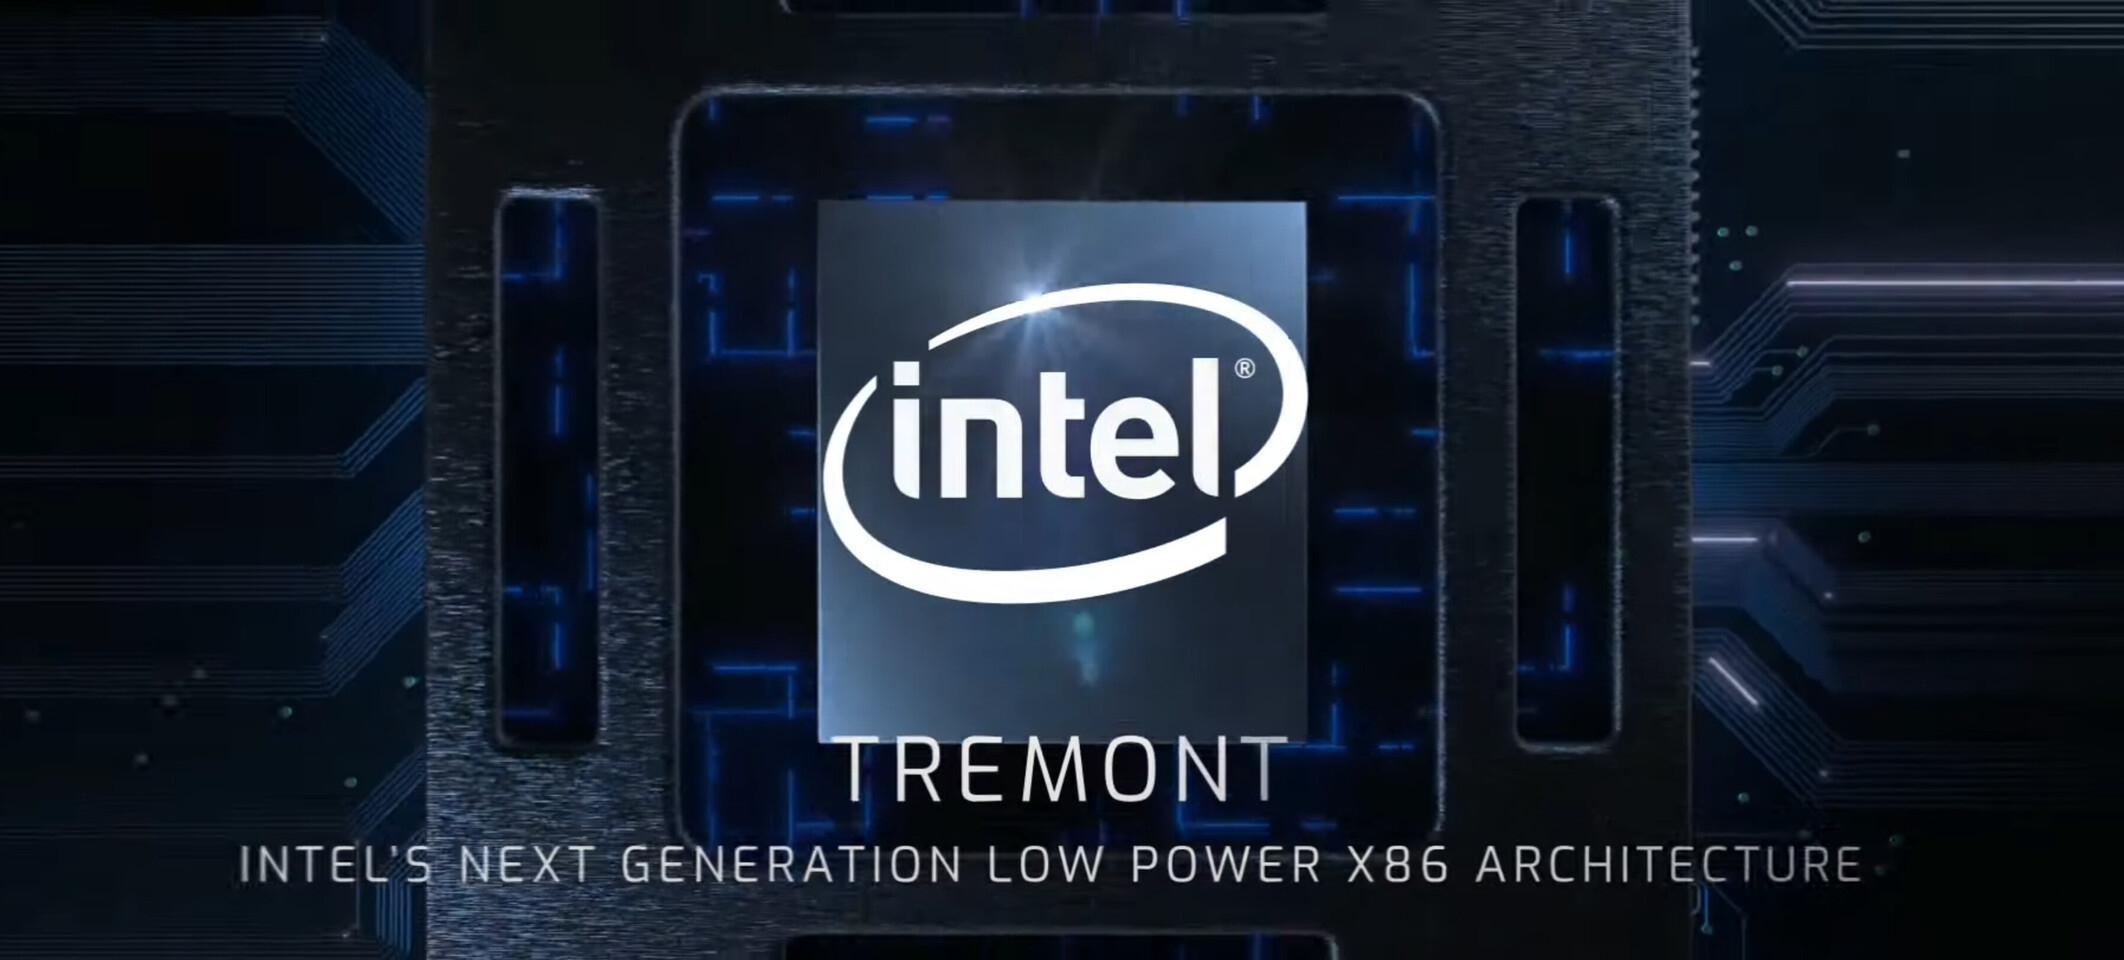 Intel Pentium Silver and Celeron 